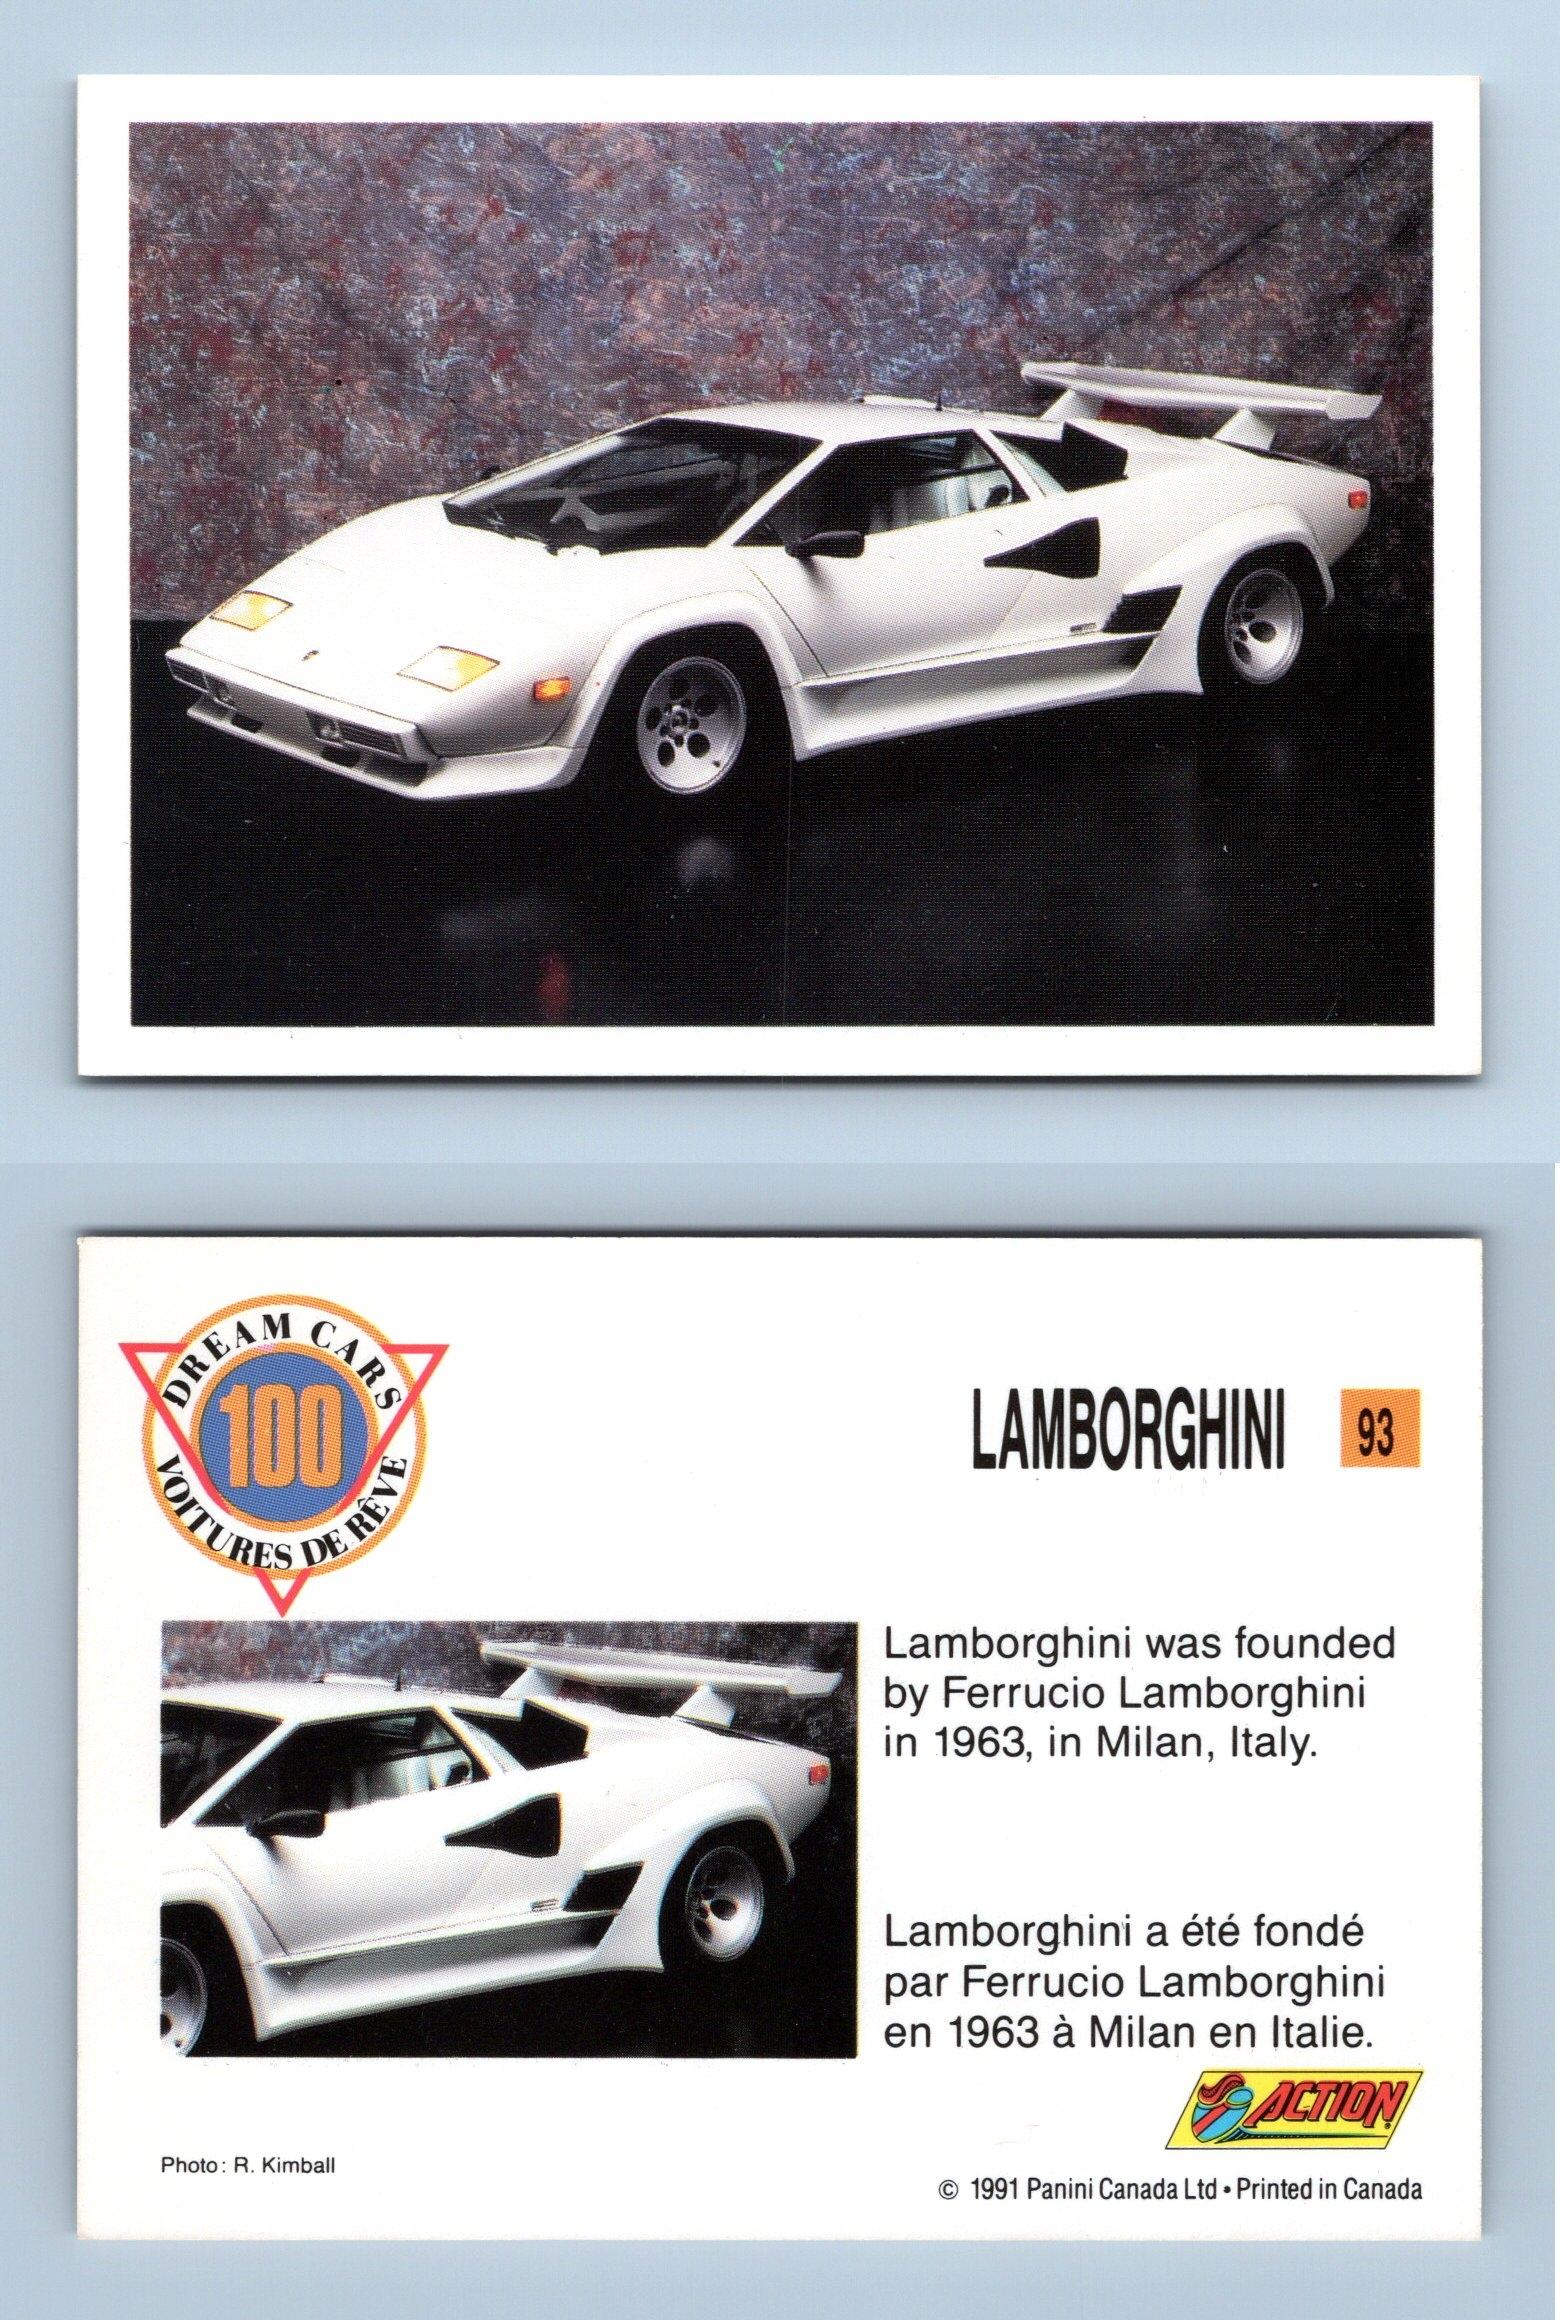 Lamborghini #93 - Dream Cars 1991 Panini Trading Card